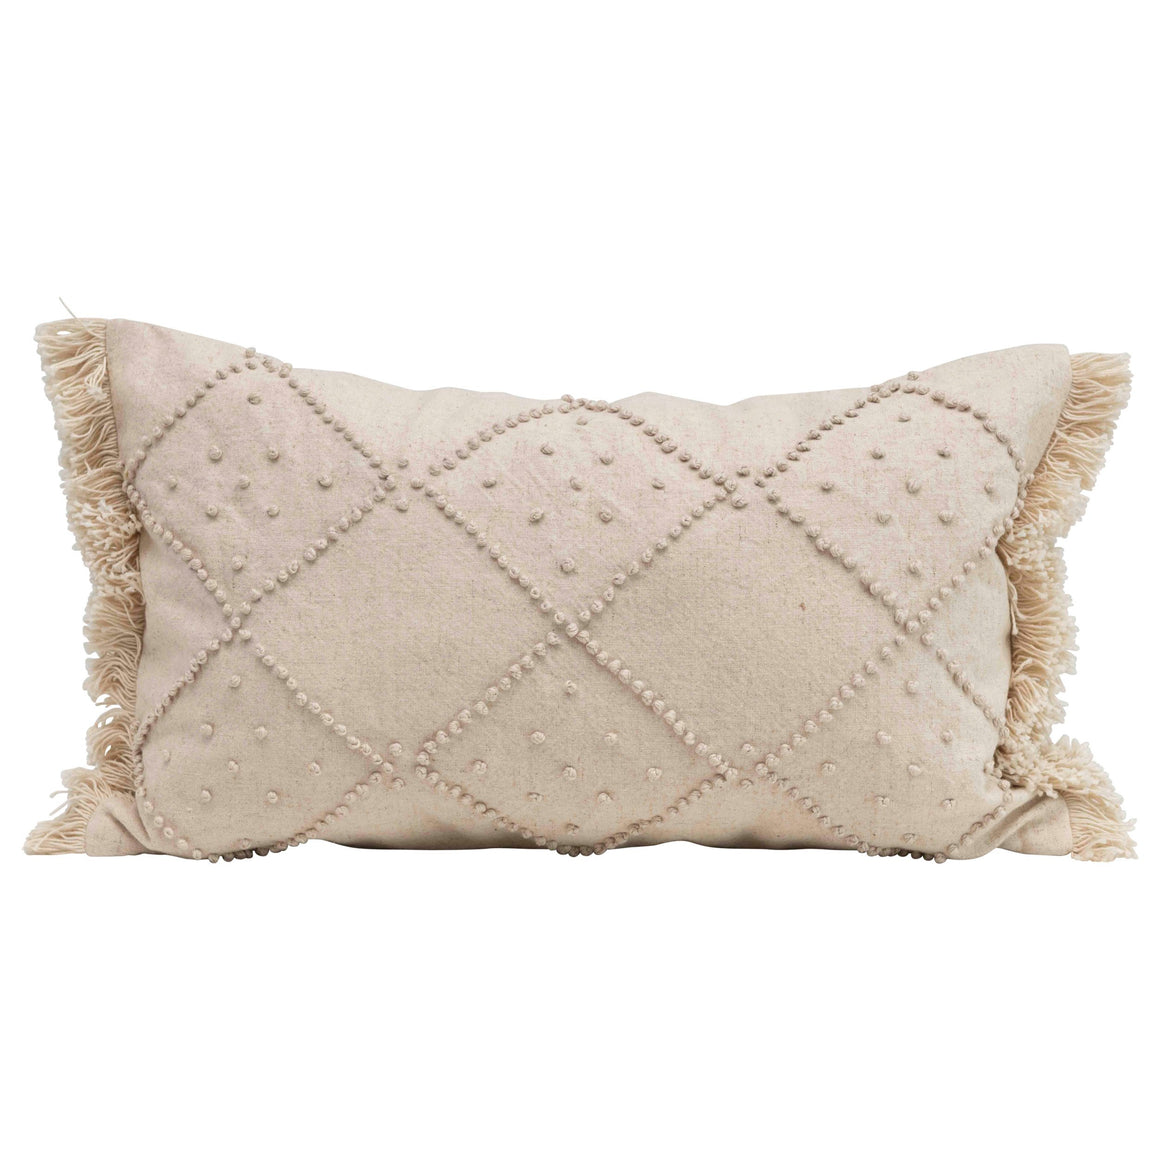 Cream Woven Cotton & Linen Blend Lumbar Pillow w/French Knots & Fringe,